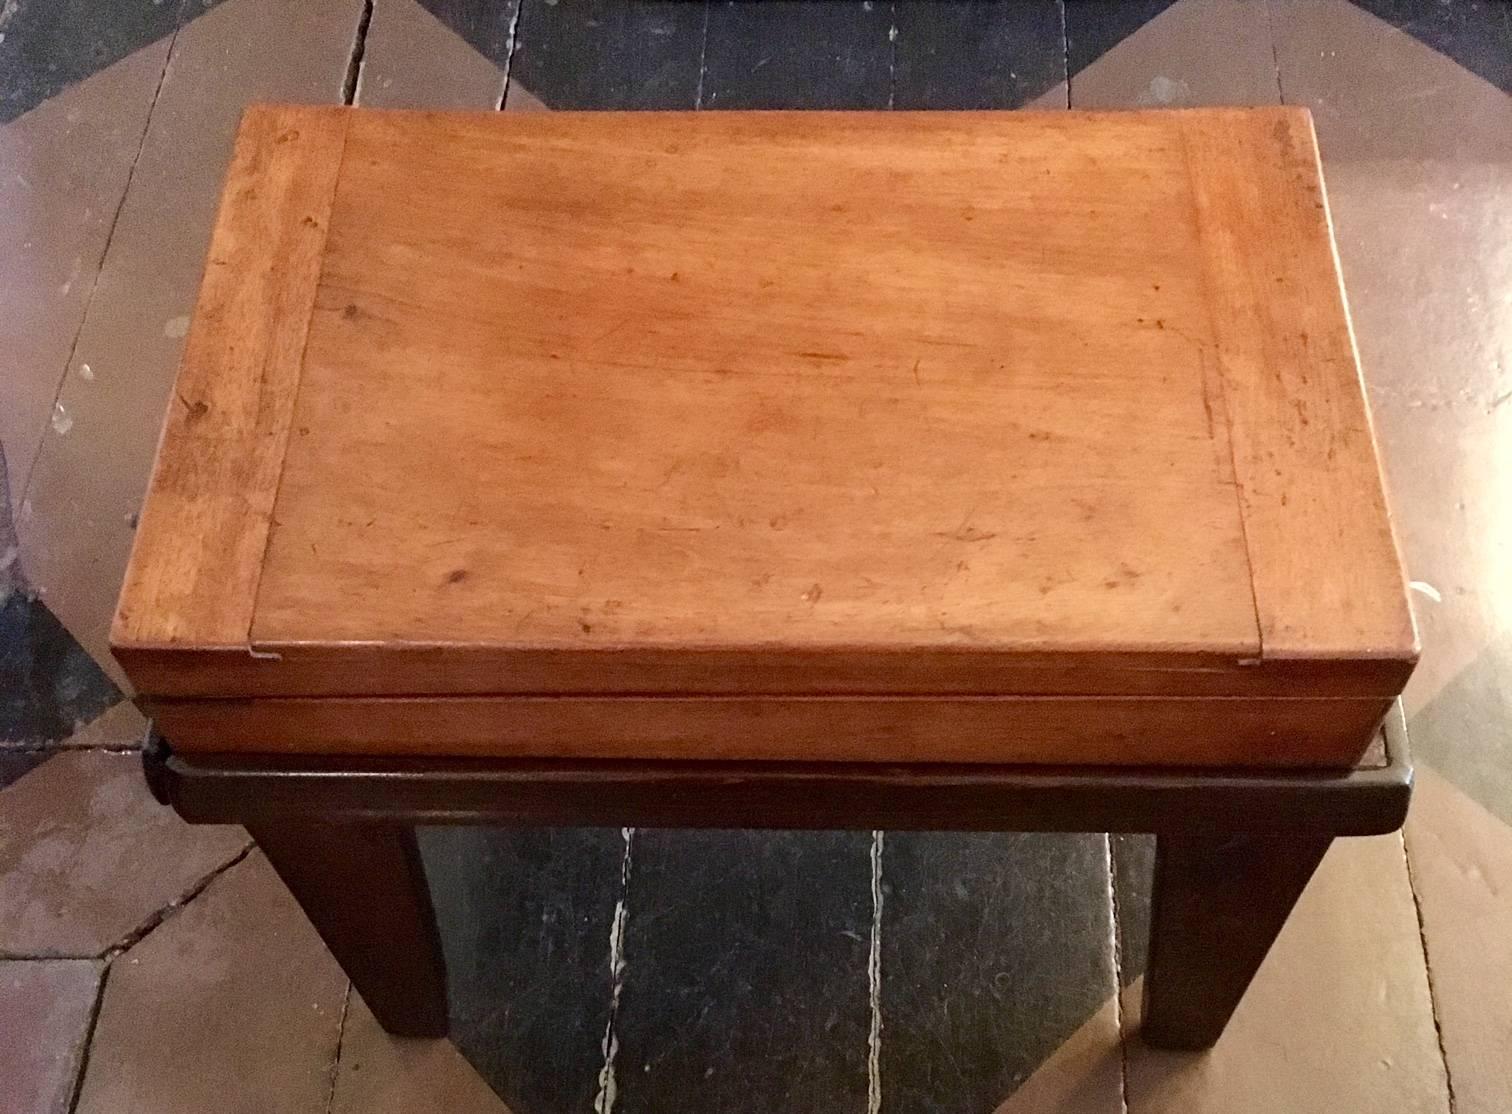 Table Bagatelle d'enfant en acajou du XIXe siècle, vers 1840, montée sur une base personnalisée d'époque. L'étui rectangulaire peu profond en acajou s'ouvre sur charnière pour devenir une table de jeu tapissée de feutre, avec des dépressions